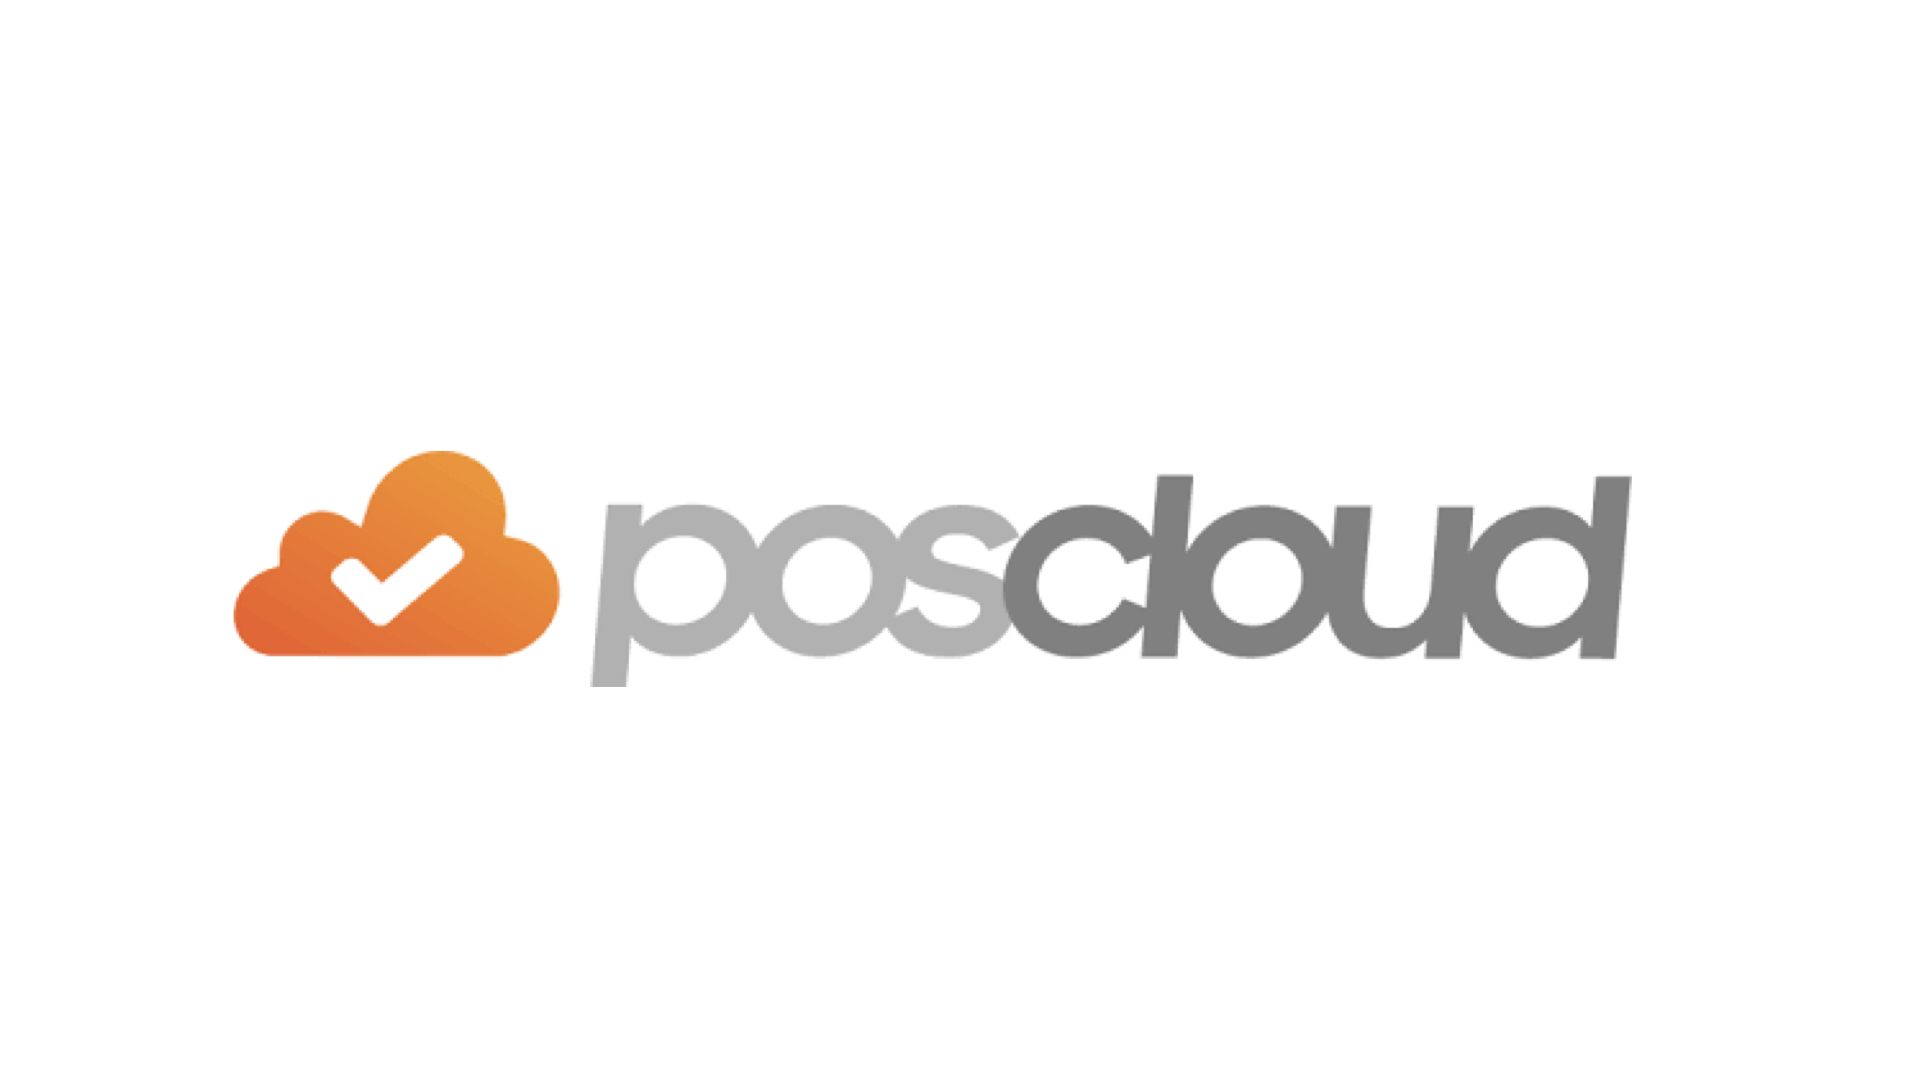 POScloud